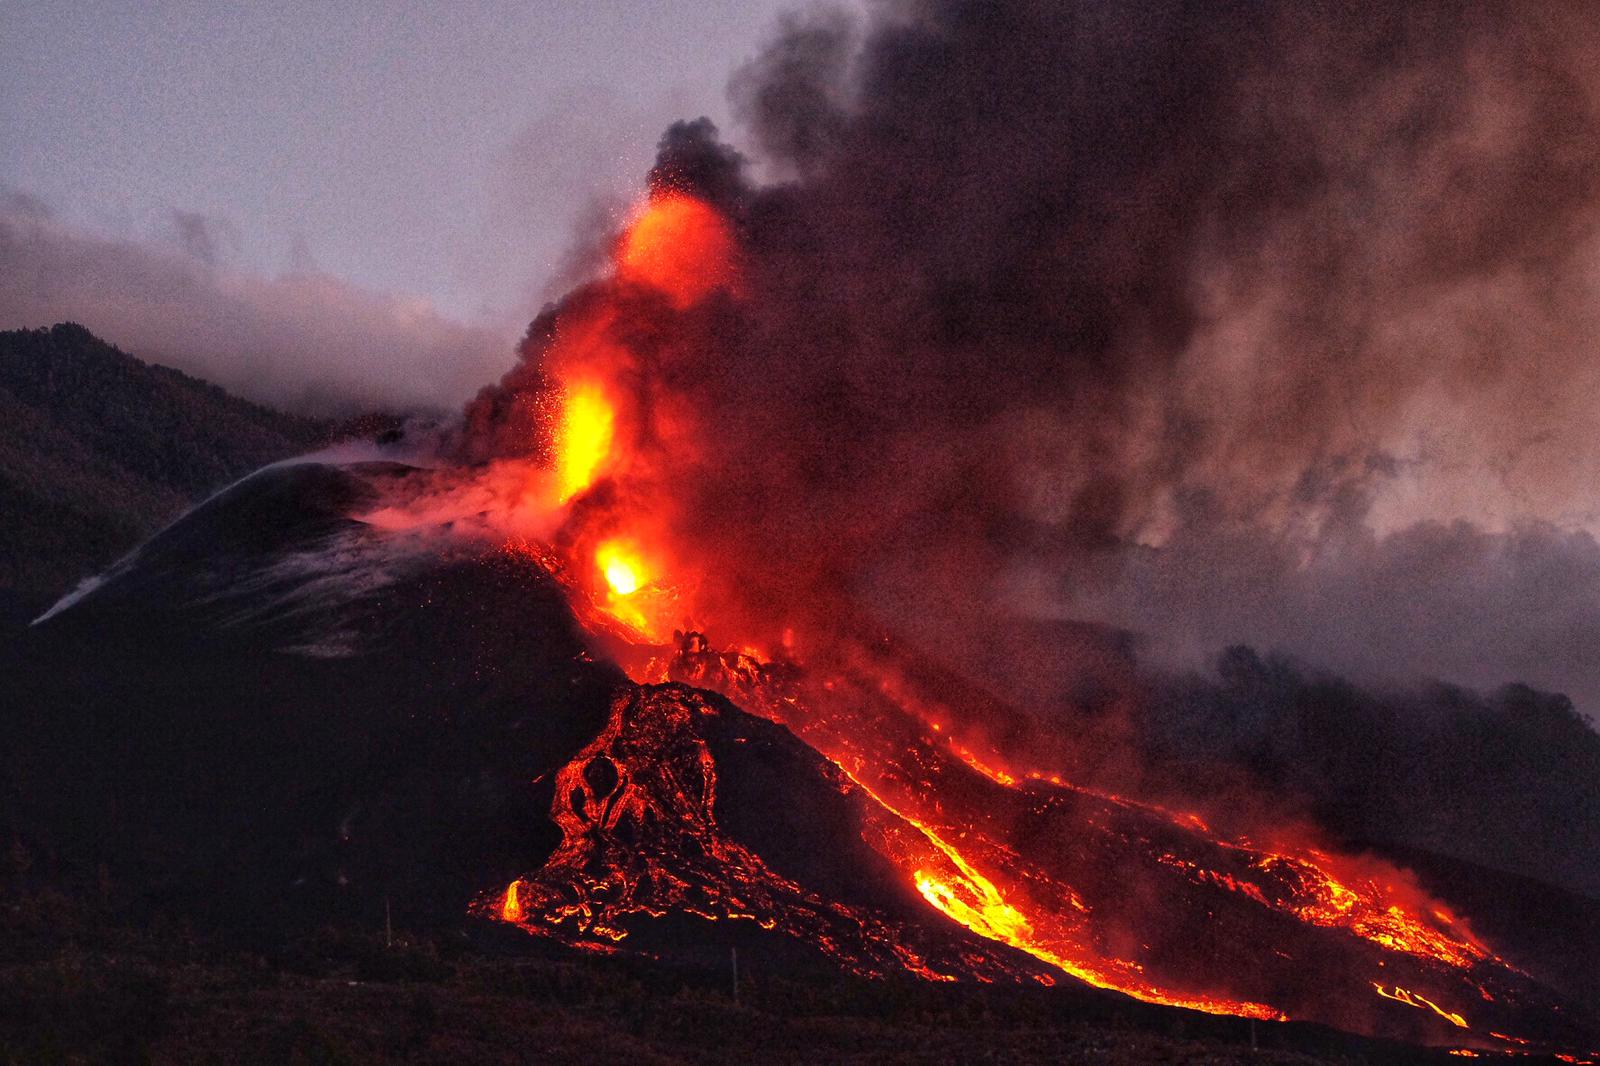 Afbeelding van de uitbarsting van de vulkaan op La Palma